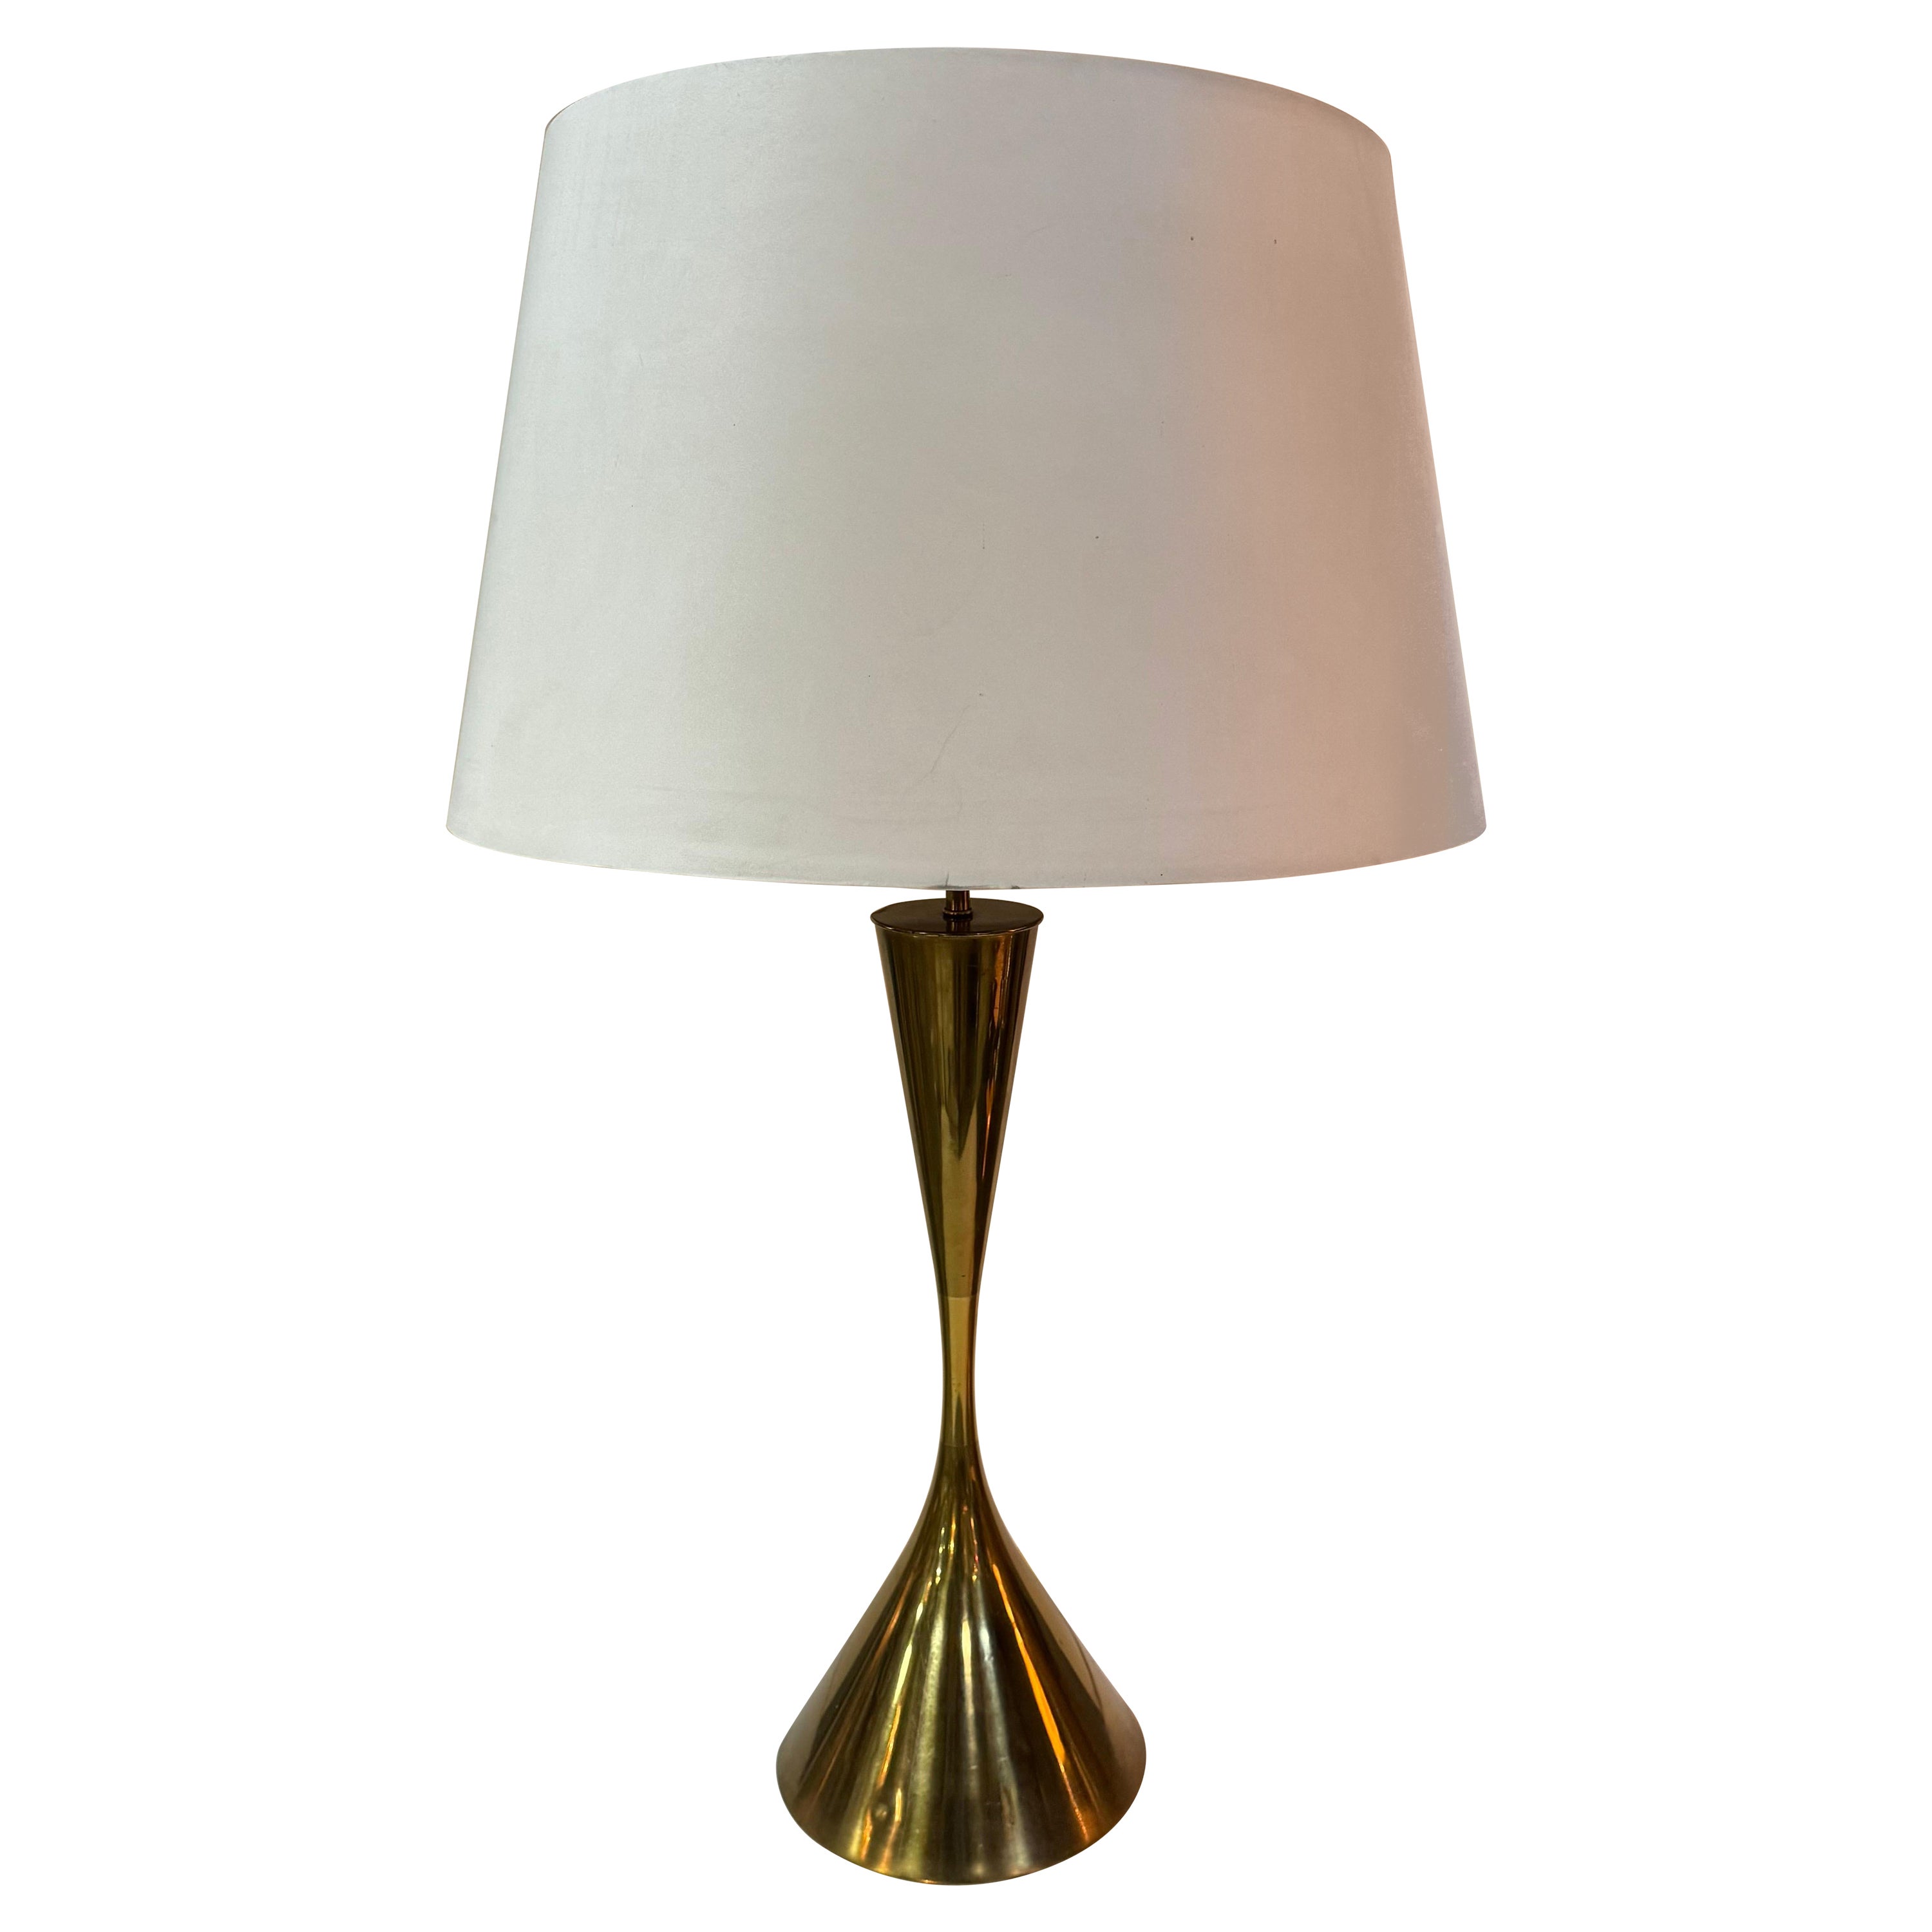 Angelo Lelli Brass Table Lamp by Arredoluce Monza